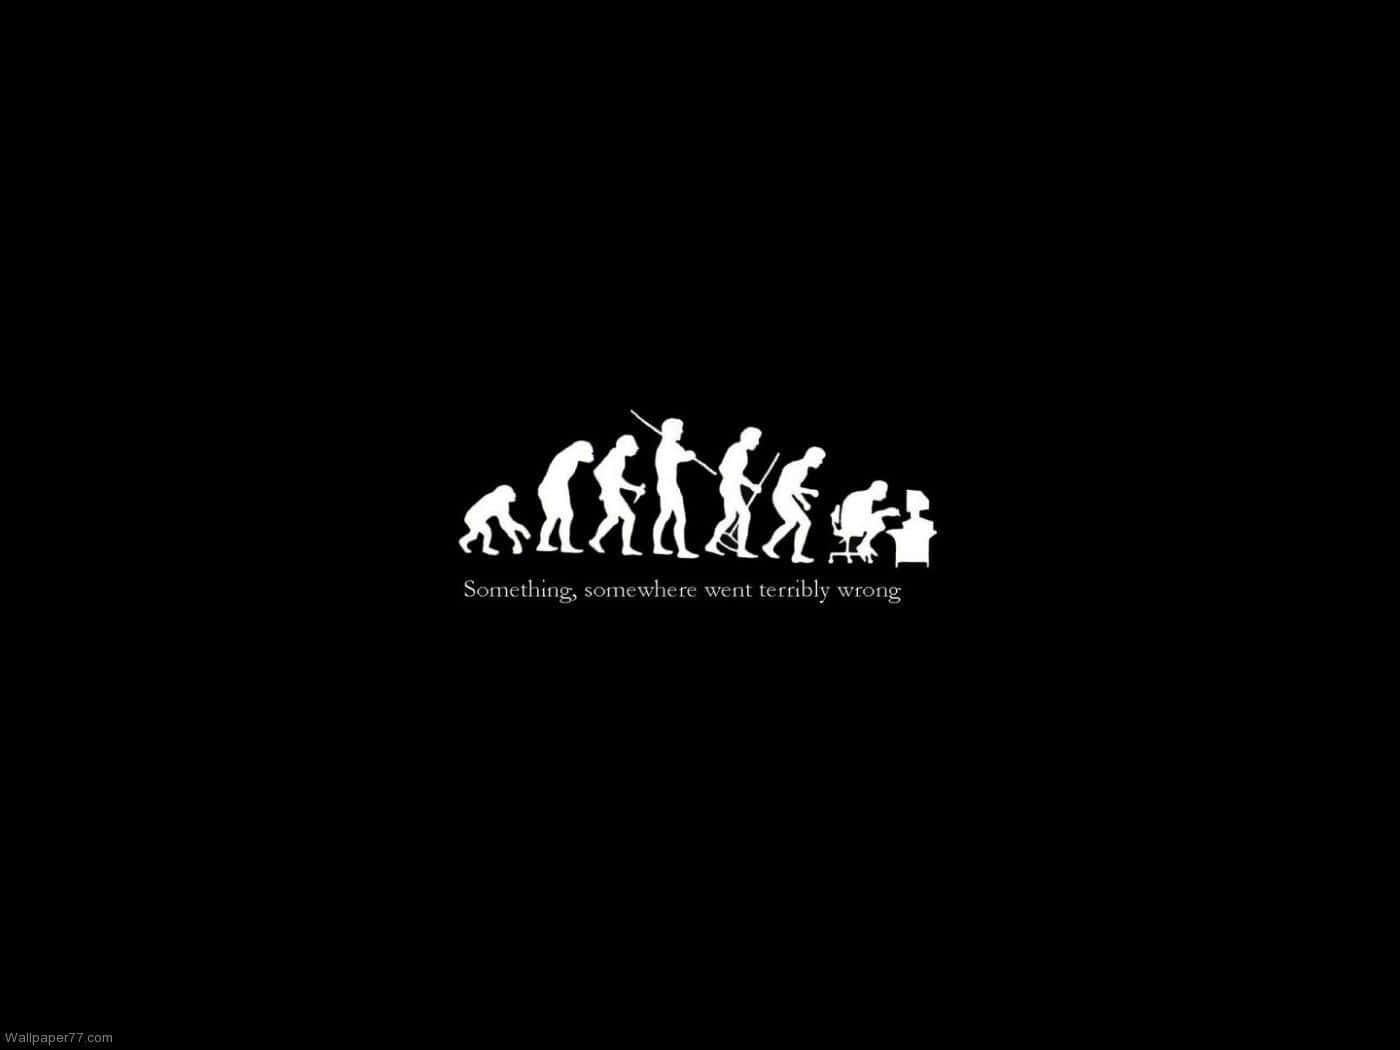 Evolutionav Människan Bakgrundsbild, Svart Och Vit, Evolution Av Människan, Evolution Av Människan, Evolution Av Människan, Evolution Av Människan, Evolution Av Människan, Evolution Av Människan Wallpaper